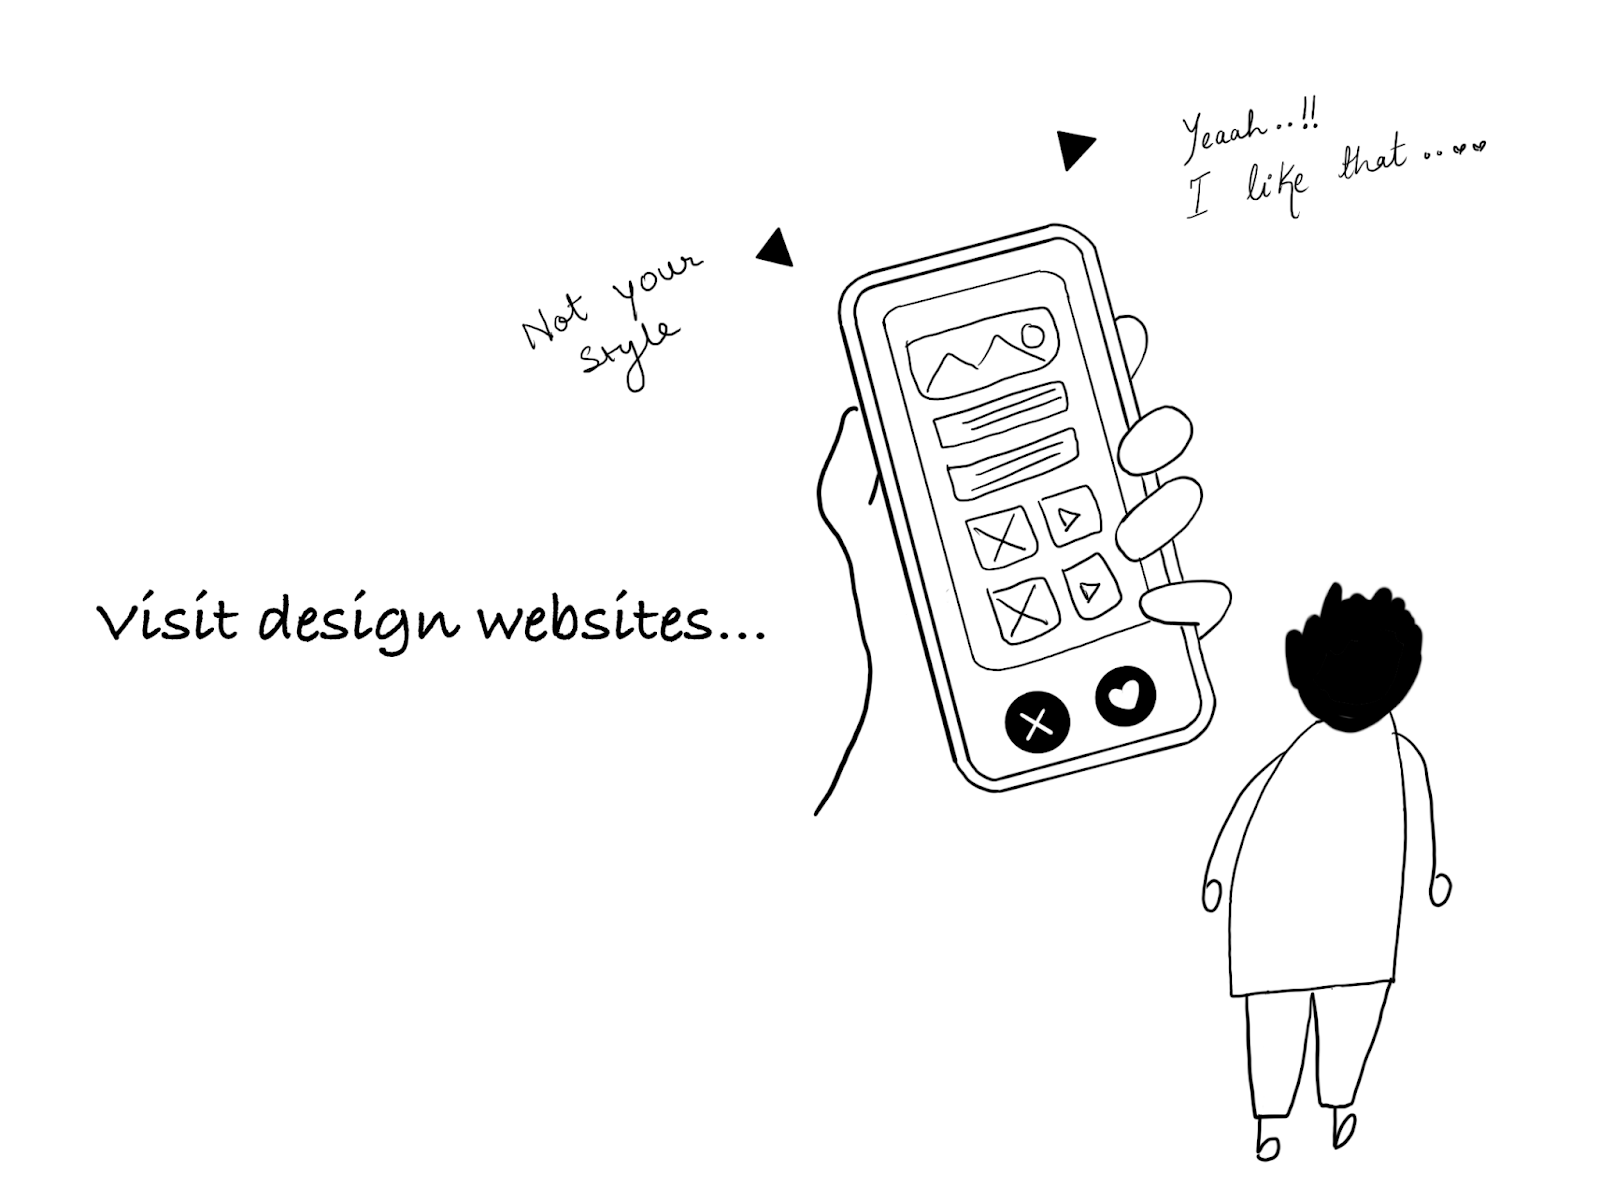 Visit design websites